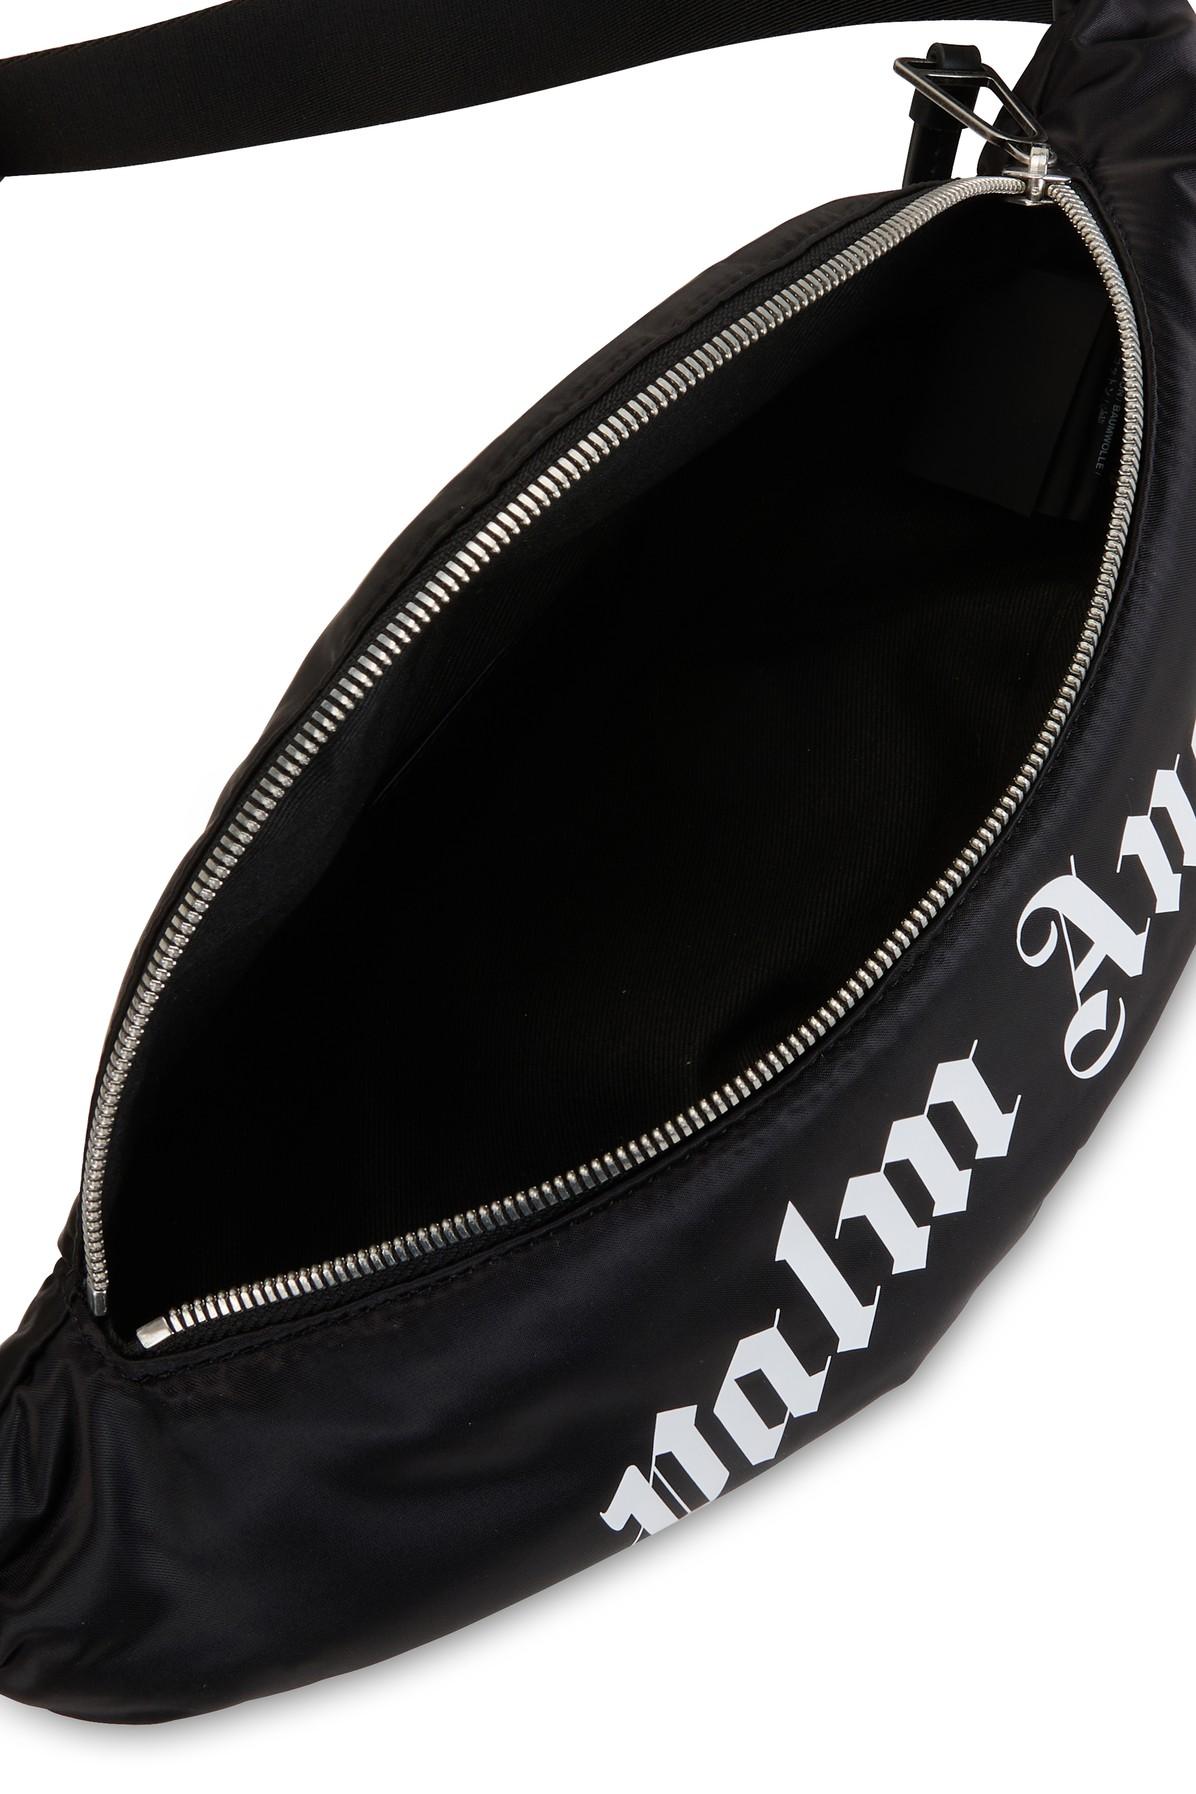 Palm Angels Curved Logo Belt Bag in Black_white (Black) for Men - Lyst